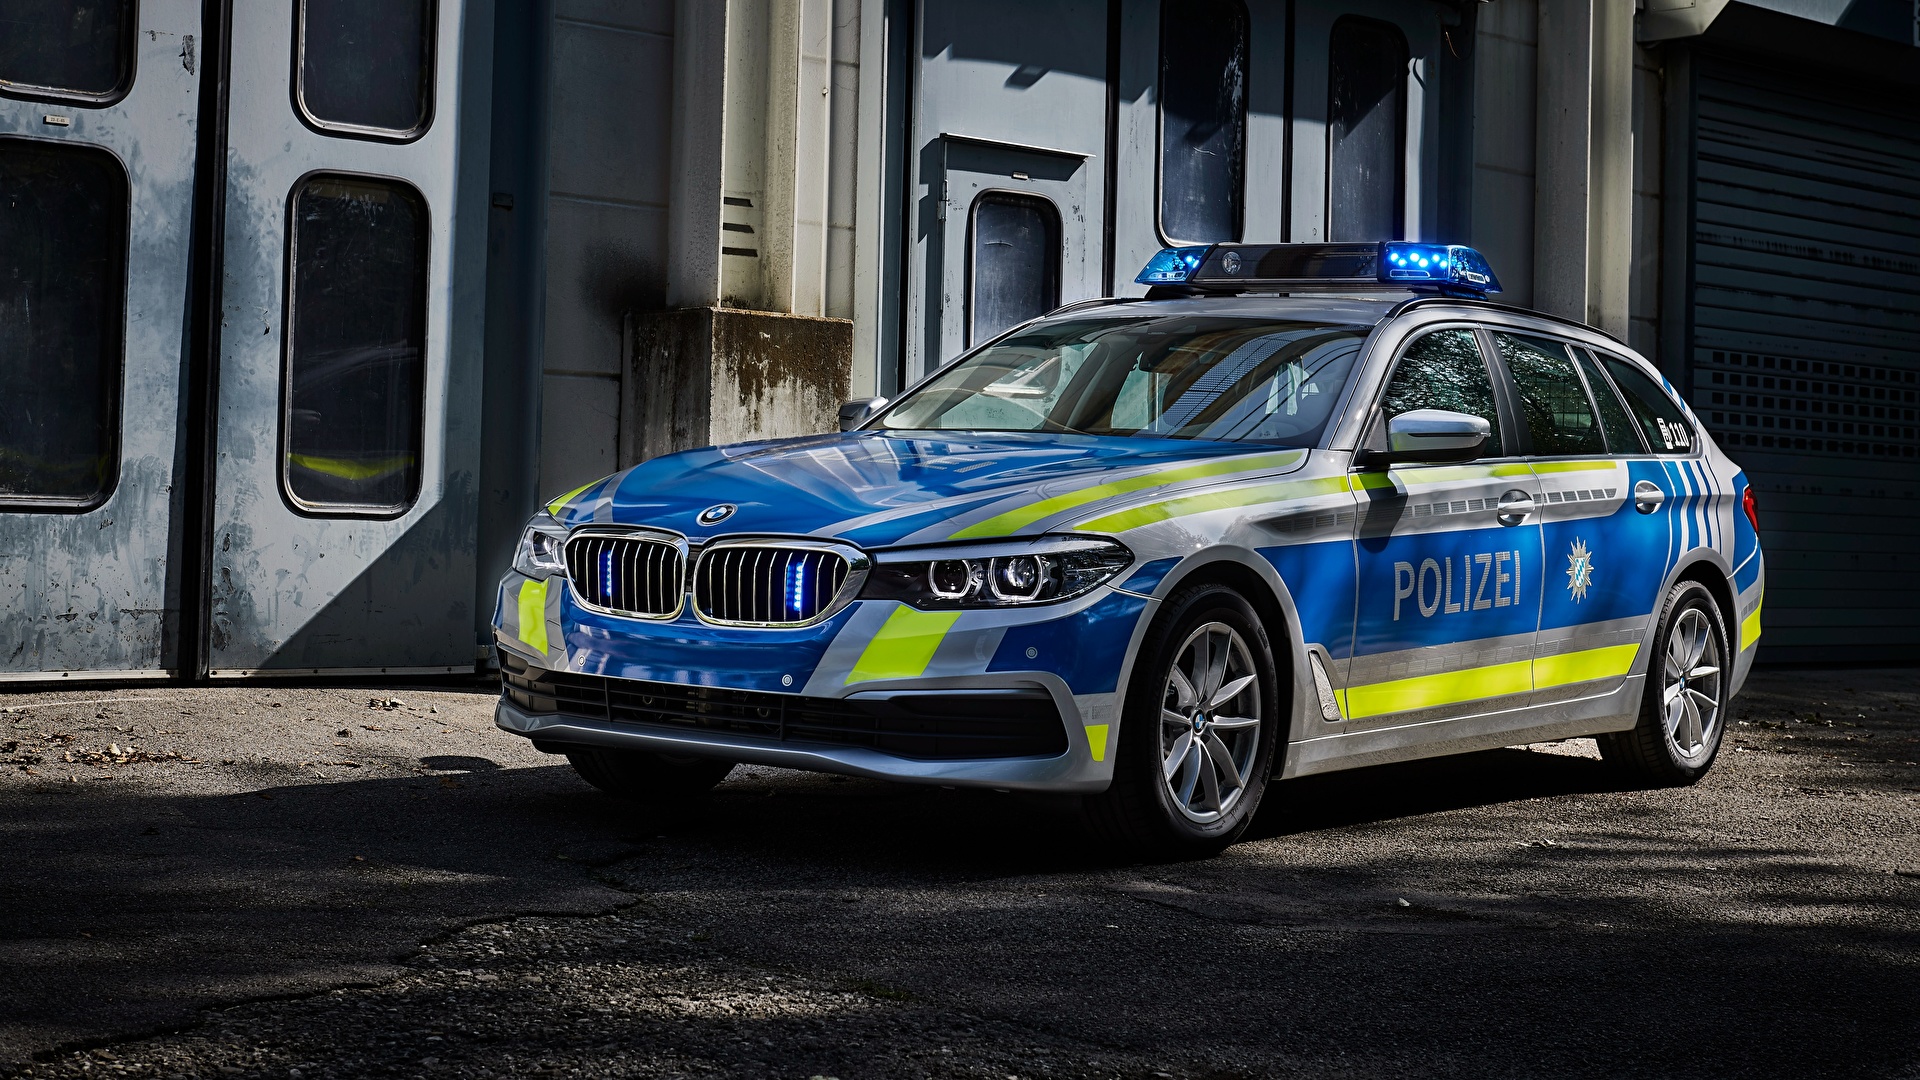 壁紙 19x1080 Bmw 改装车 17 530d Xdrive Touring Polizei 警察 汽车 下载 照片